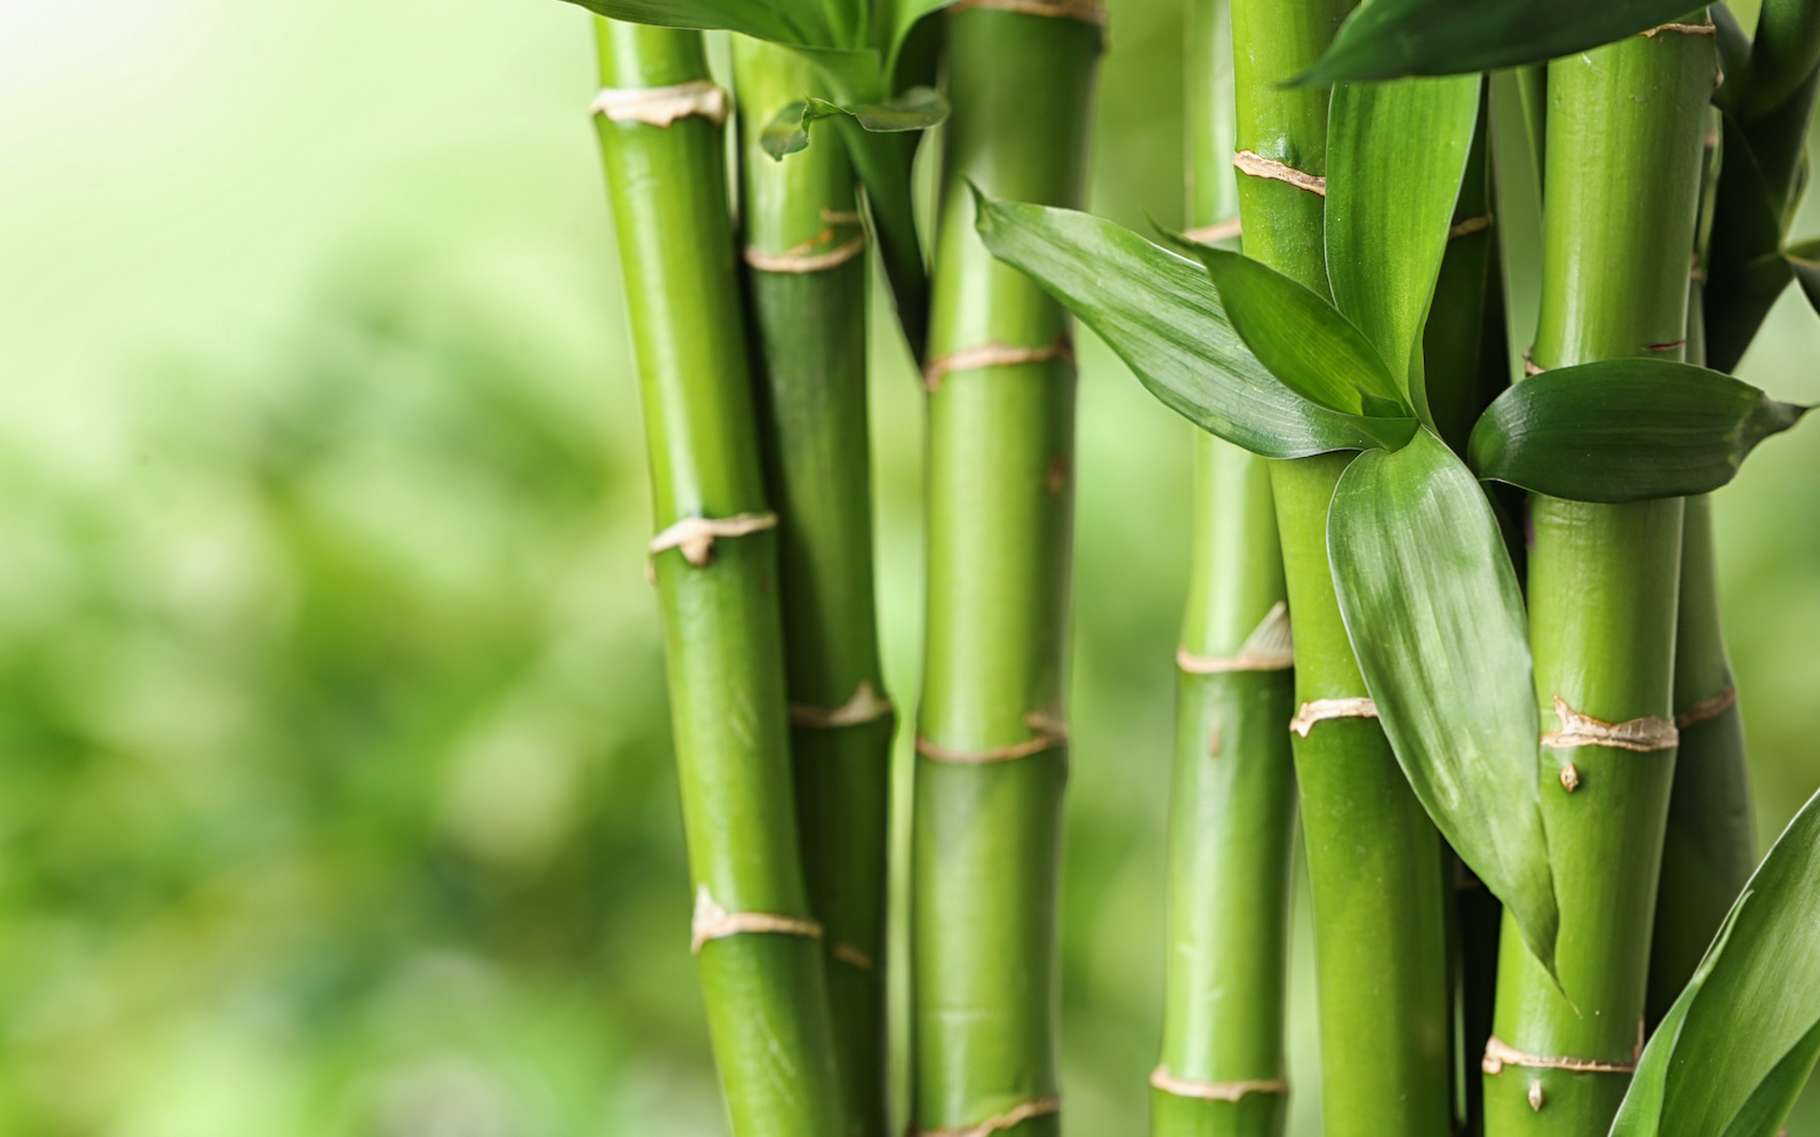 couettes bambou avantages